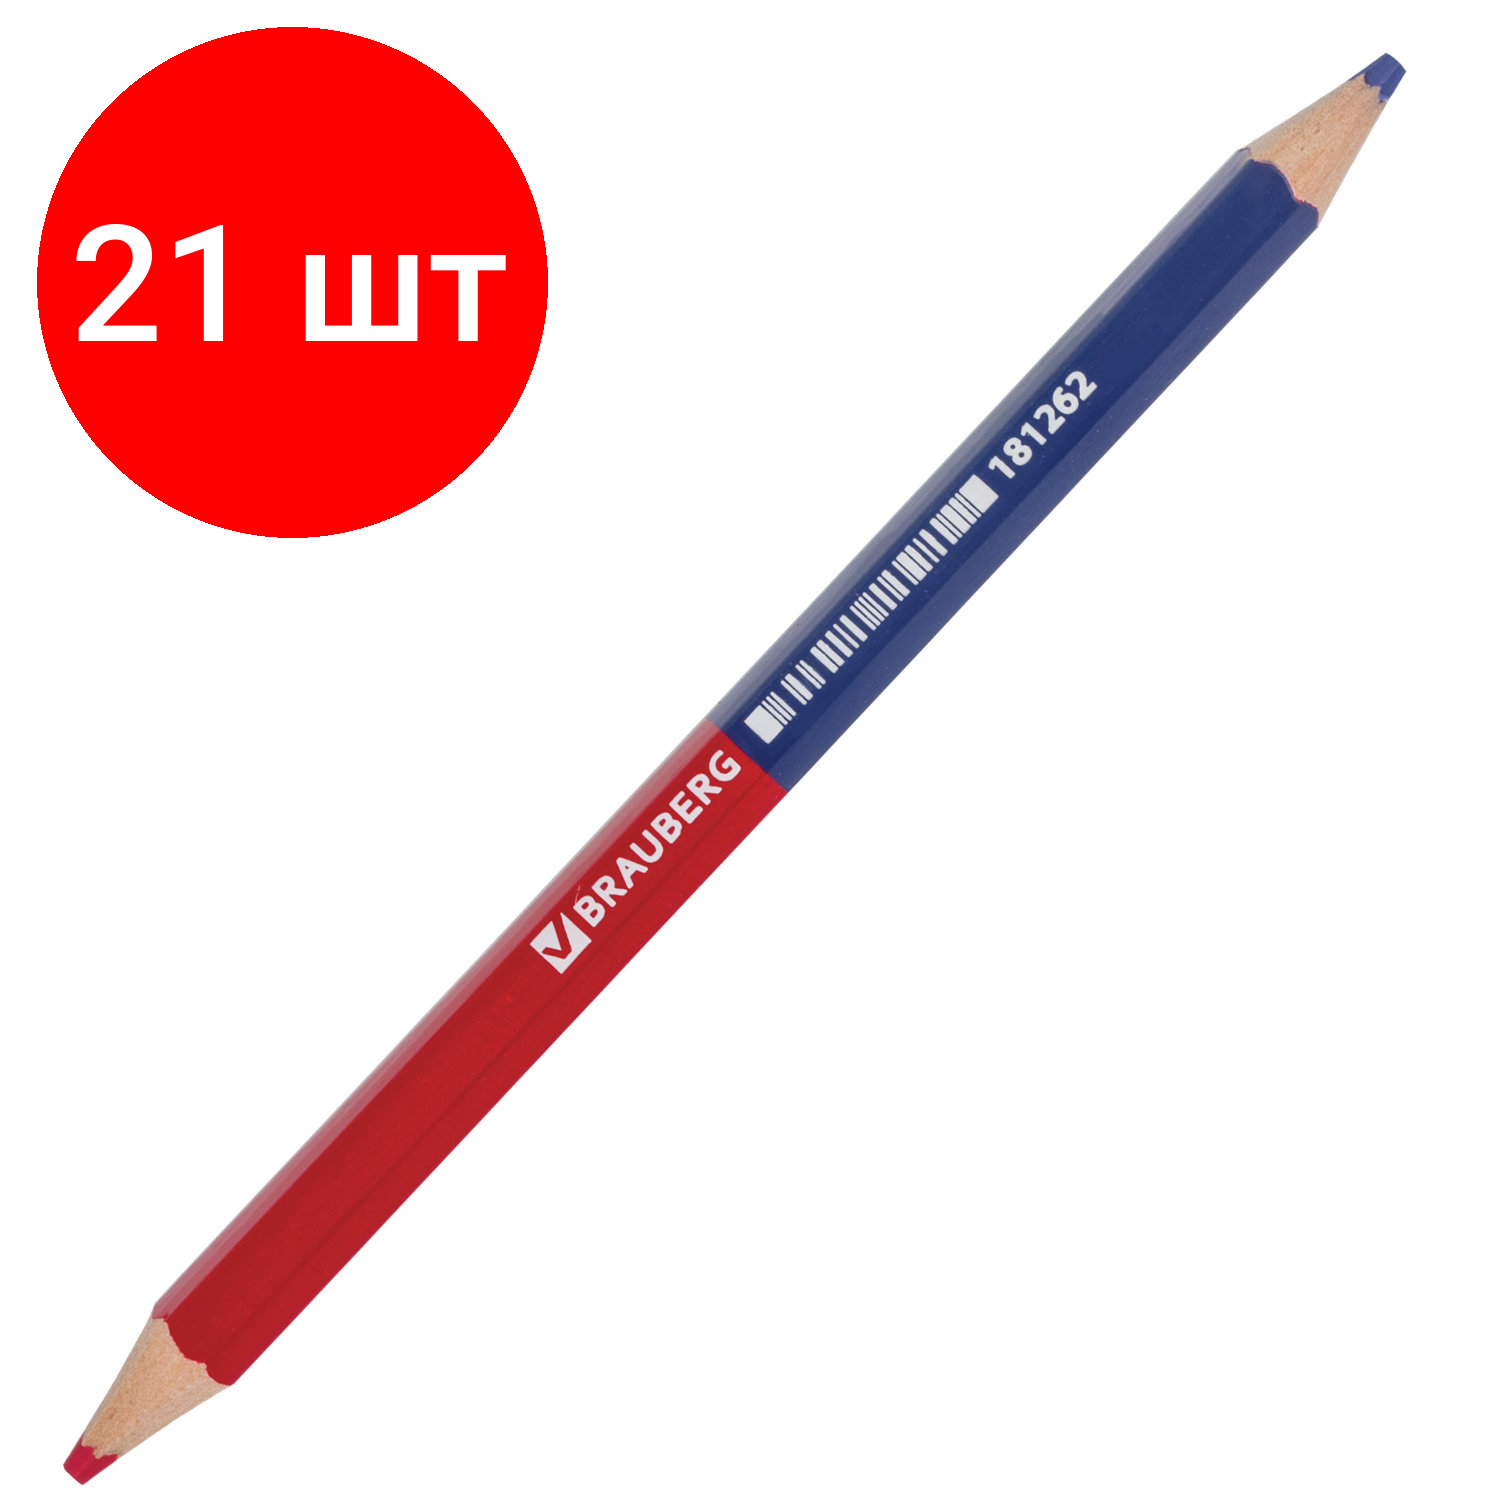 Комплект 21 шт, Карандаш двухцветный, красно-синий, утолщённый, BRAUBERG, заточенный, грифель 4.0 мм, 181262